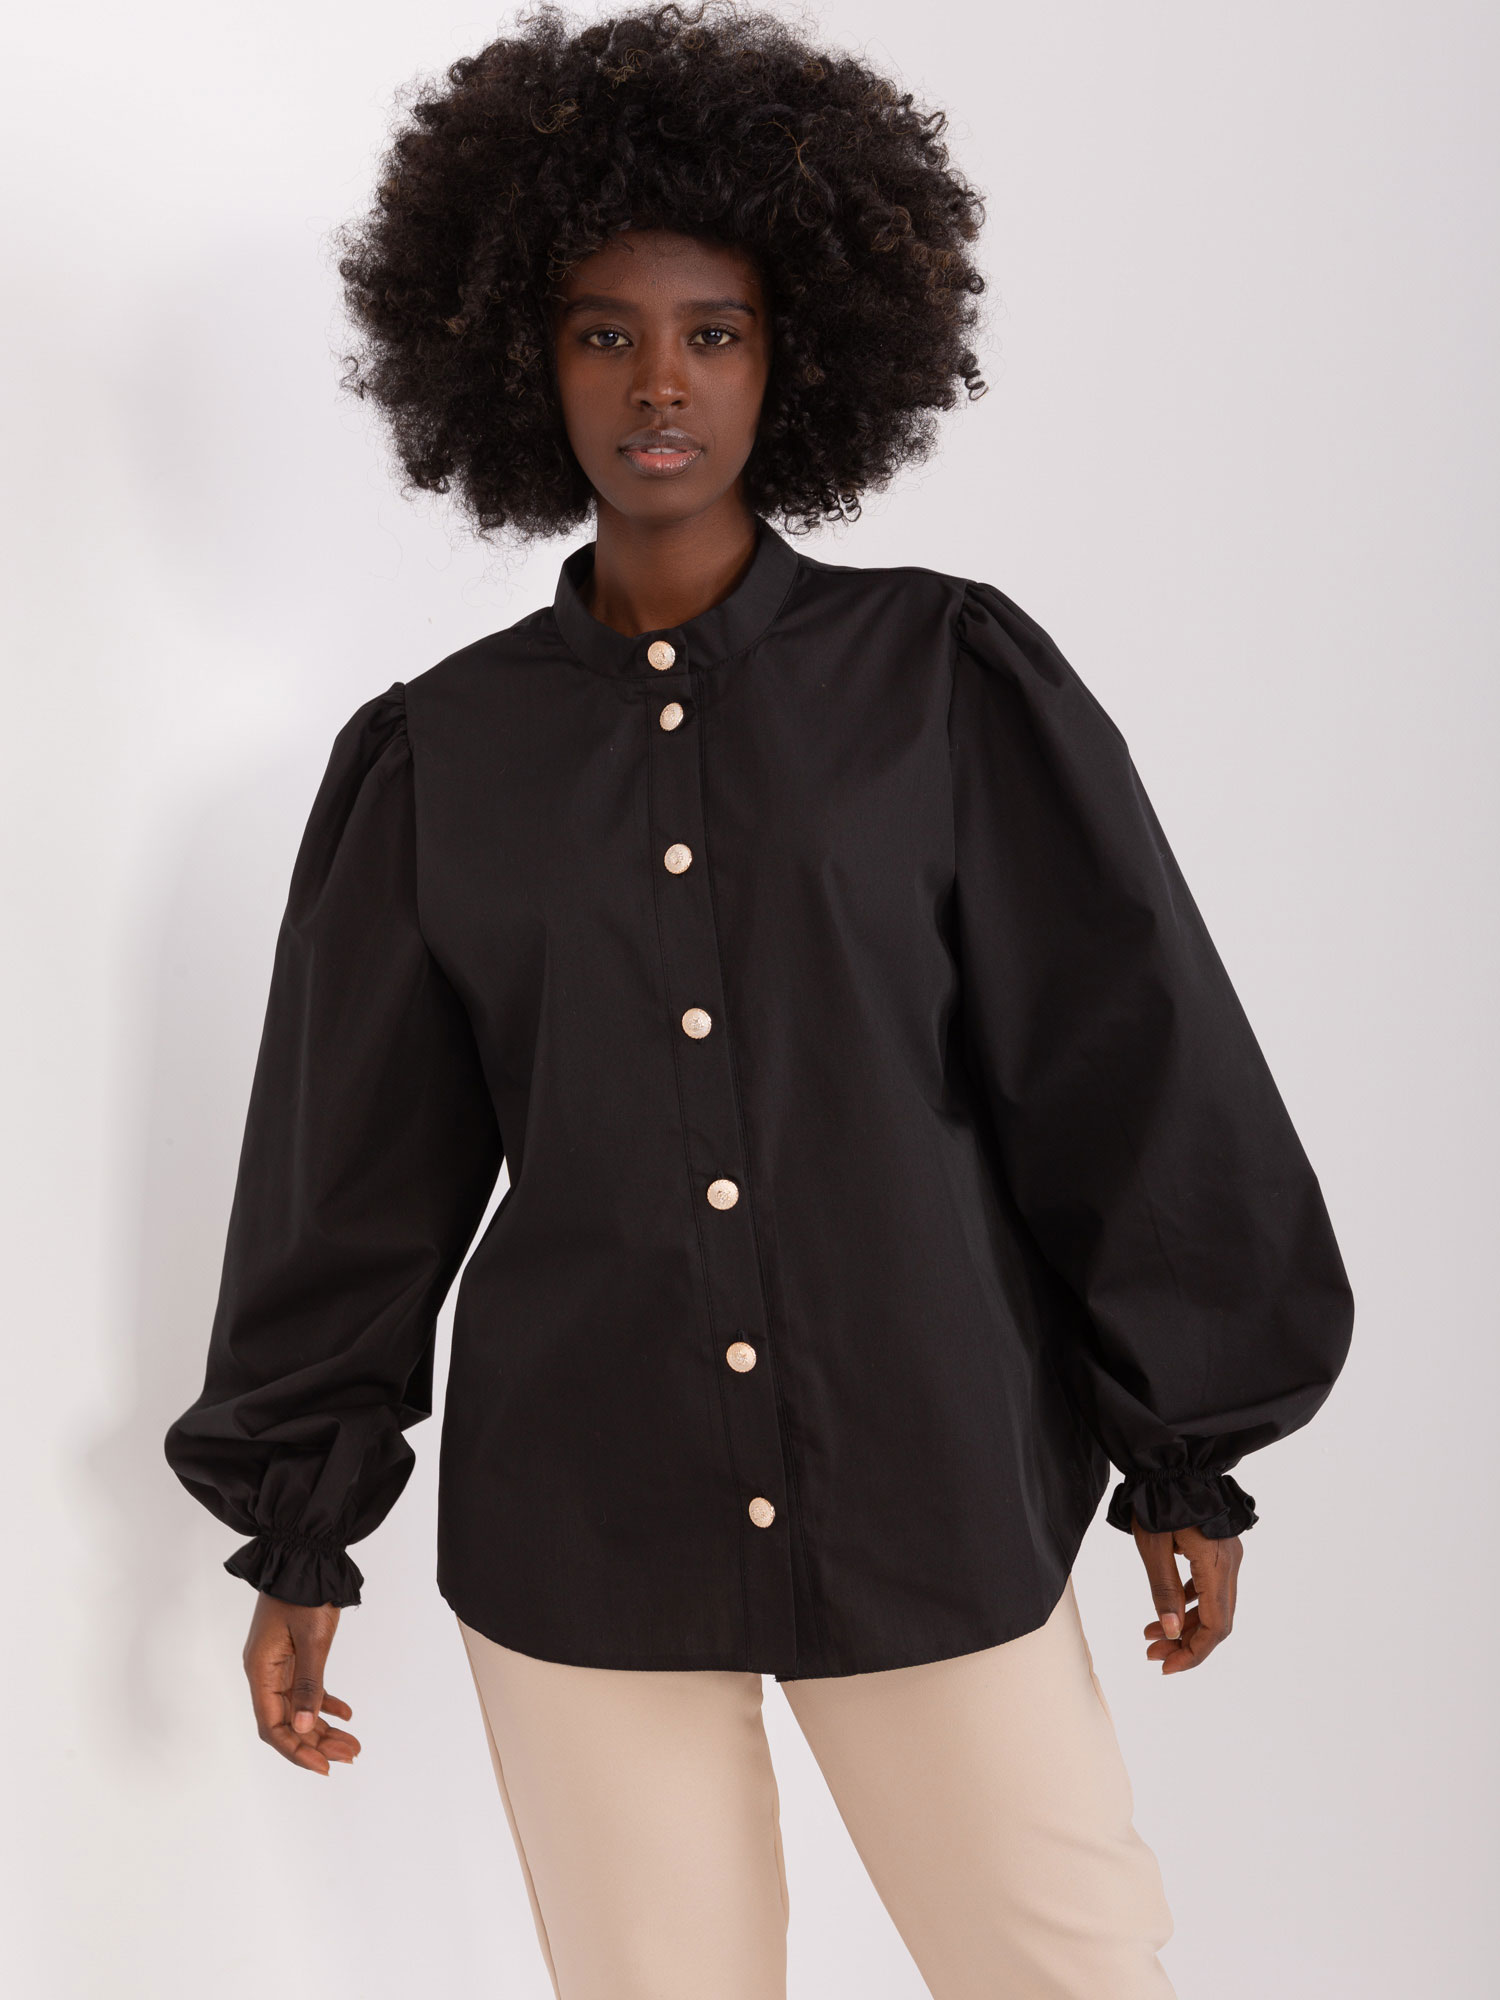 Černá košile s nabíranými rukávy LK-KS-509484.87-black Velikost: L/XL